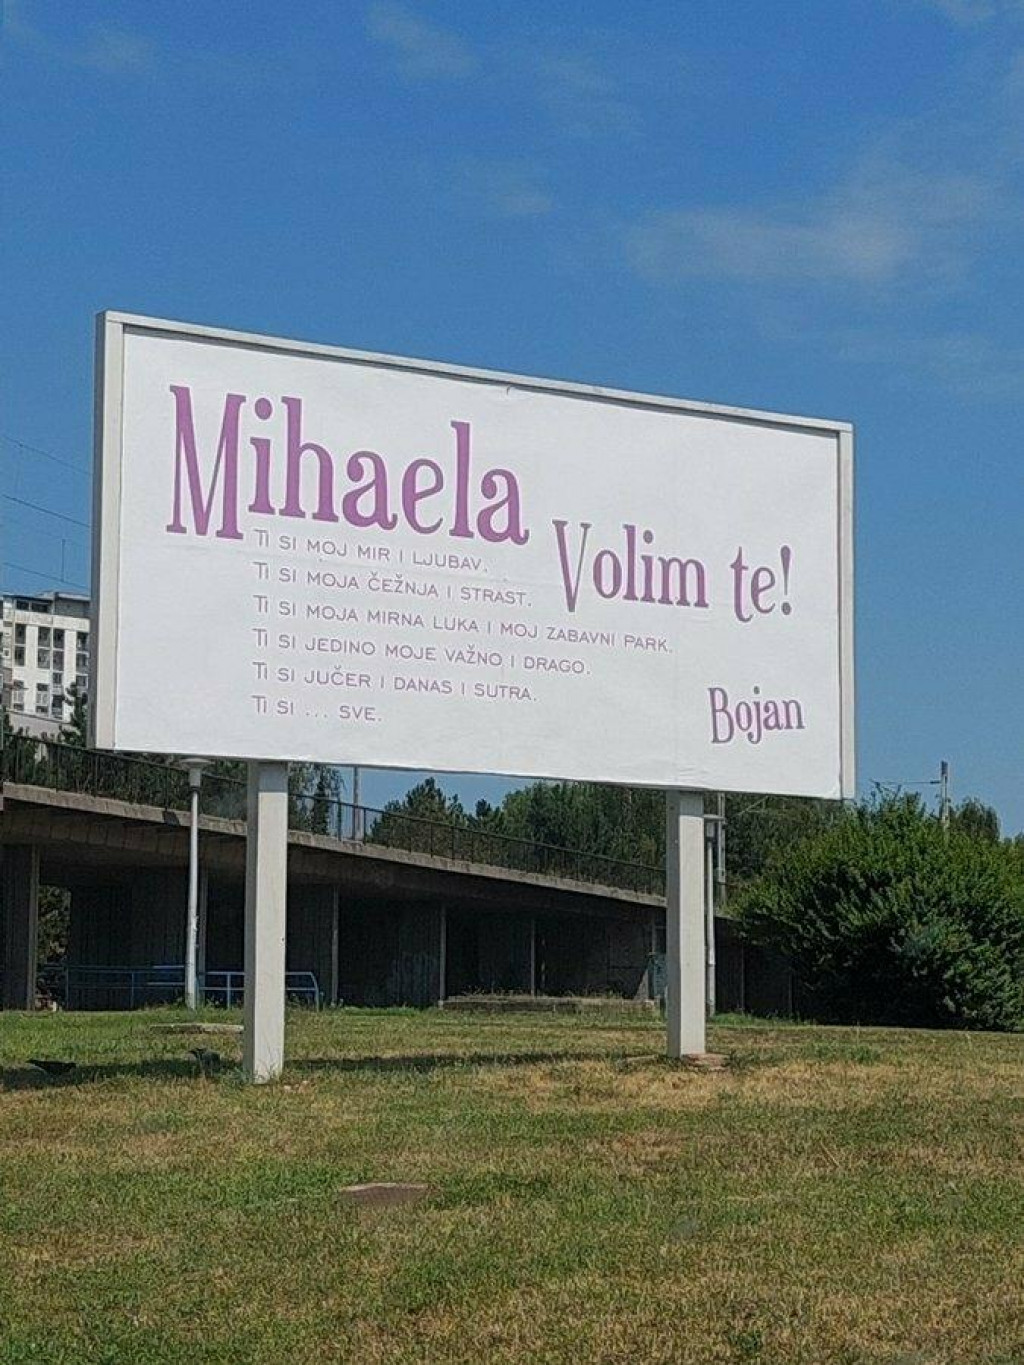 &lt;p&gt;Na zagrebačkoj Peščenici pojavio se plakat s ljubavnom porukom jednoj Mihaeli&lt;/p&gt;
